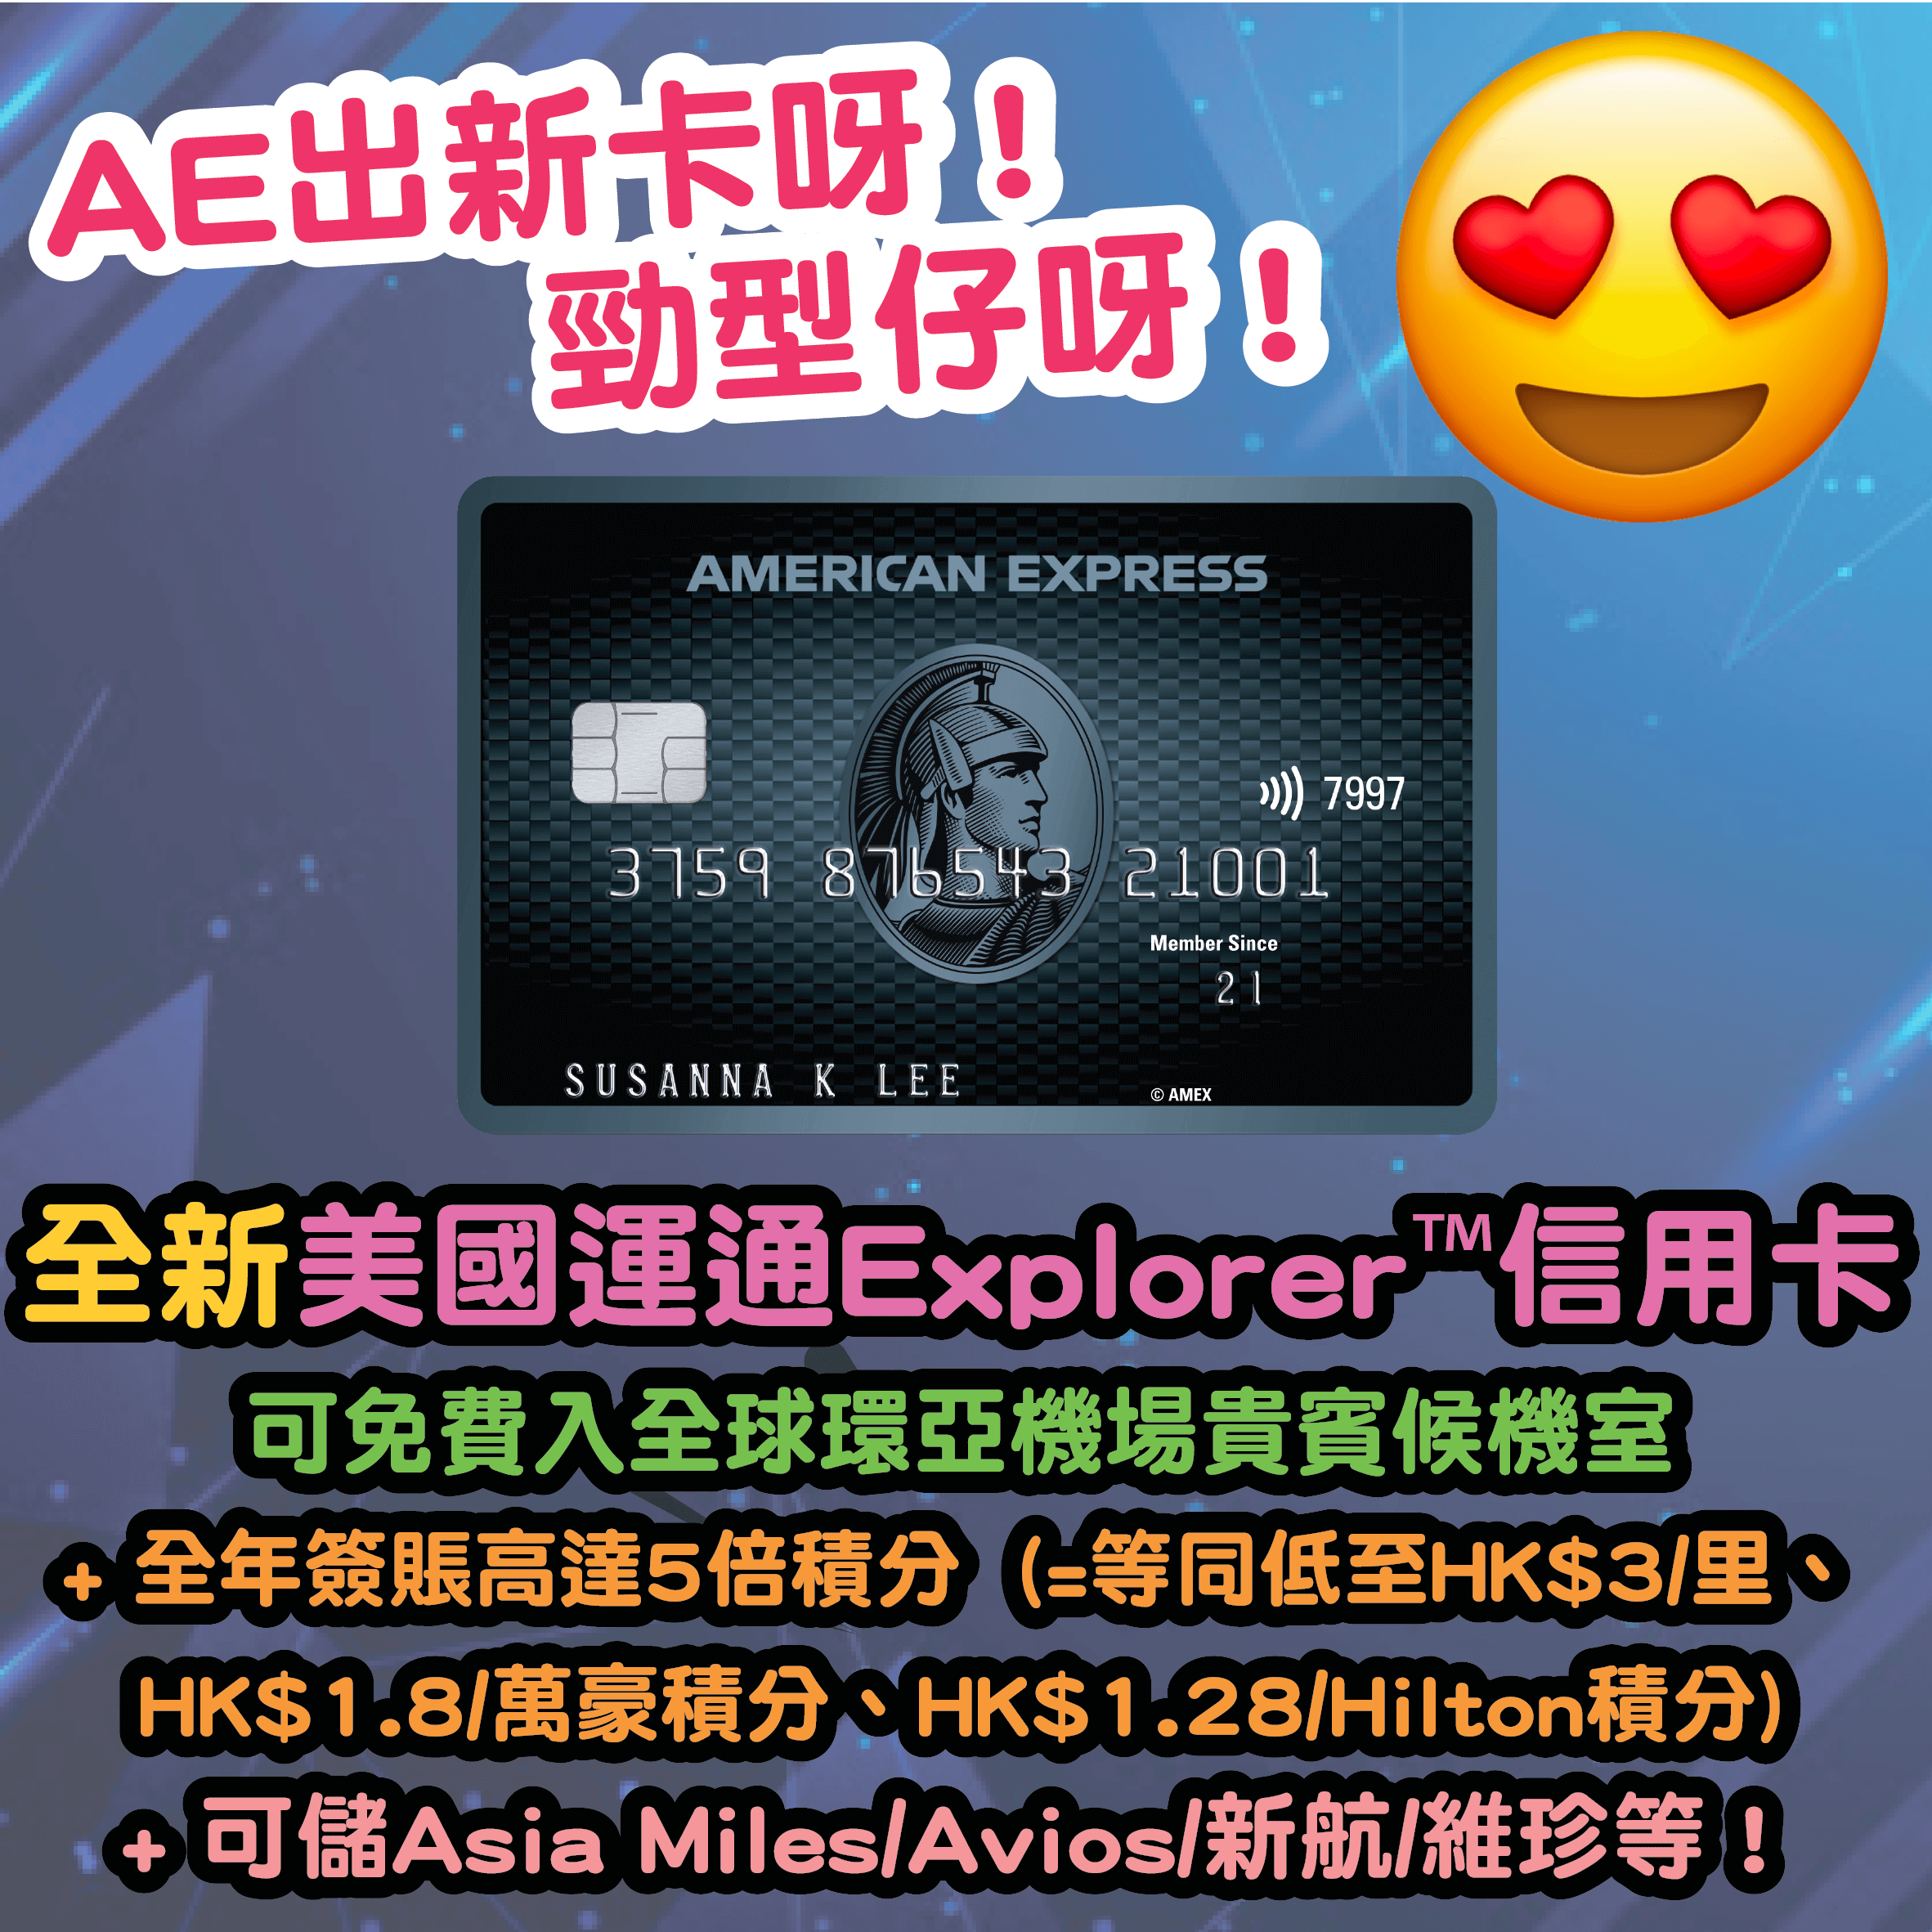 【猛料呀！猛料呀！AE出新信用卡呀】全新美國運通Explorer™ 信用卡出場！基本卡及附屬卡會員可免費入全球環亞機場貴賓候機室！簽賬專享高達5X美國運通積分，等同低至HK$3/里*、HK$1.8/萬豪積分*、HK$1.28/Hilton積分*！